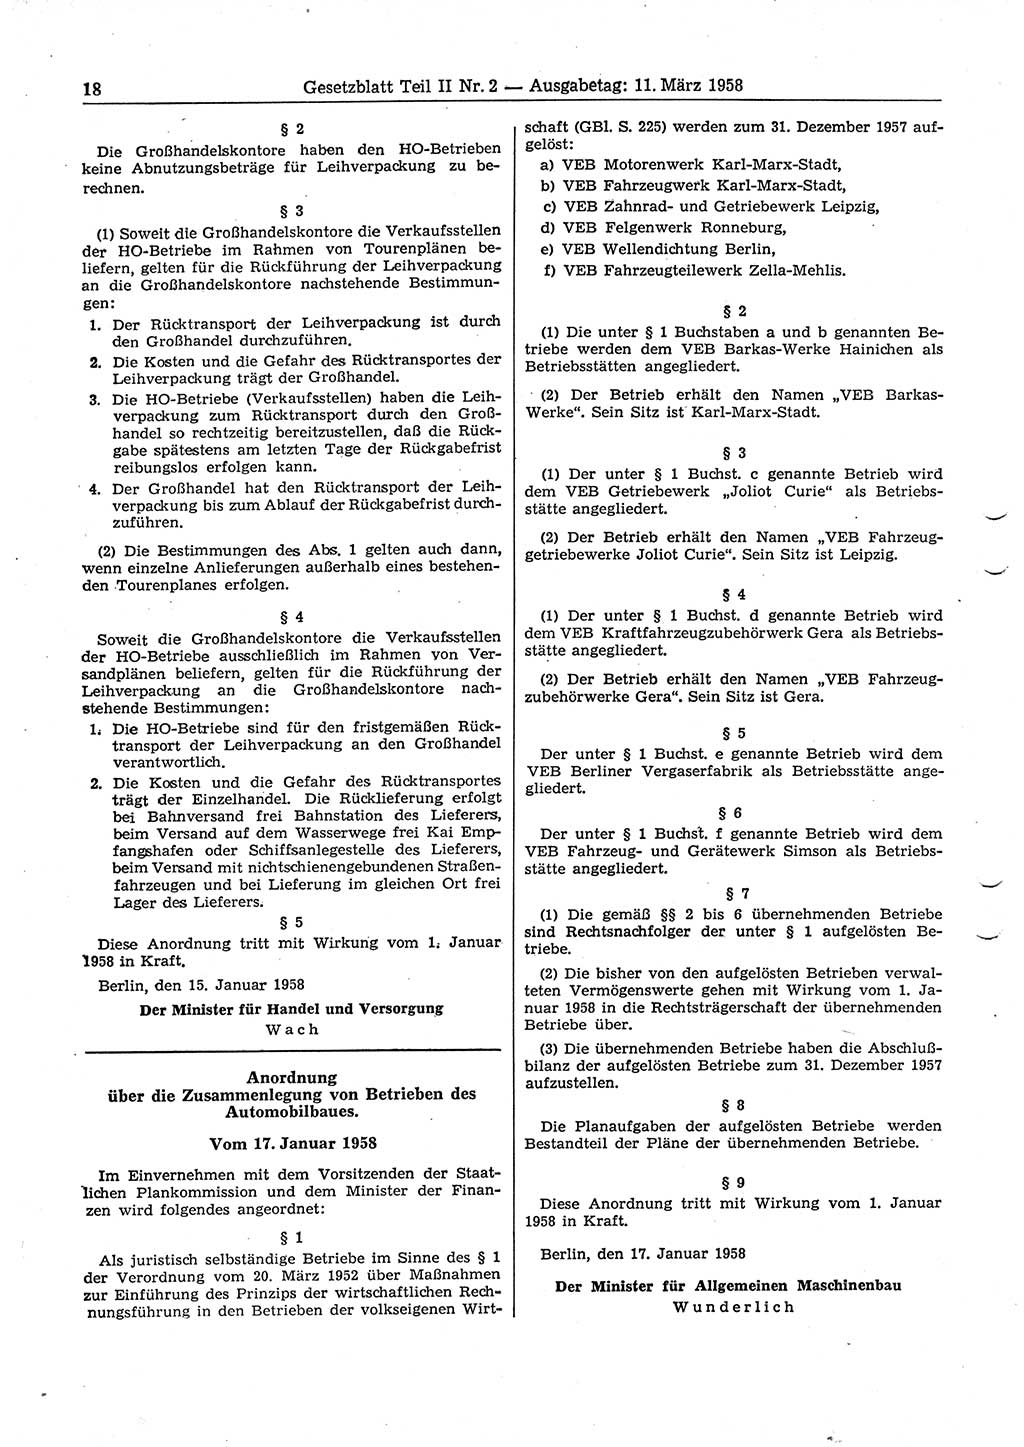 Gesetzblatt (GBl.) der Deutschen Demokratischen Republik (DDR) Teil ⅠⅠ 1958, Seite 18 (GBl. DDR ⅠⅠ 1958, S. 18)